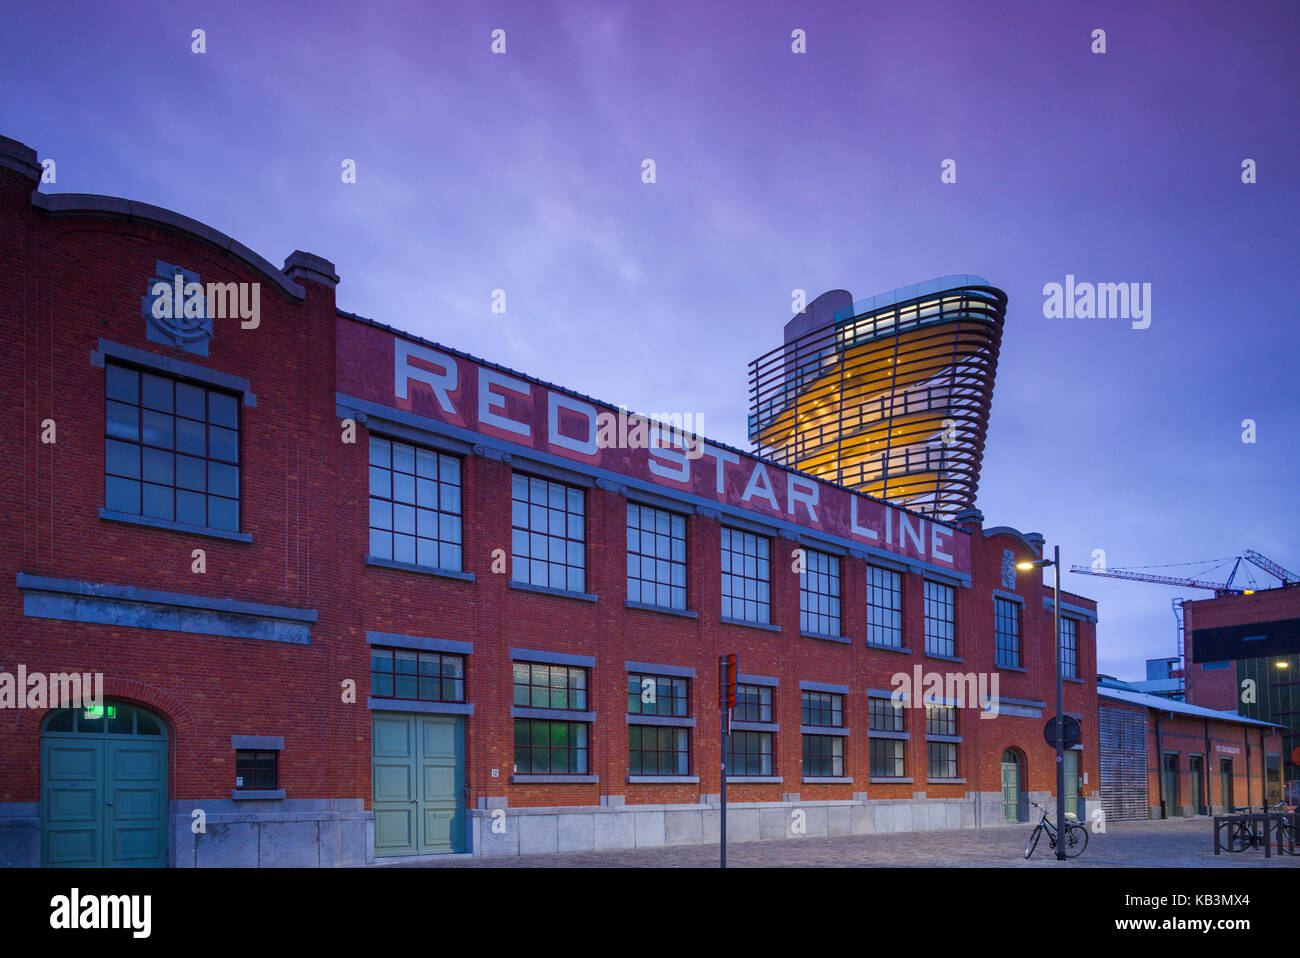 Belgio, Anversa, Red Star Line, Museo dell'immigrazione nell'ex compagnia di navigazione edificio, alba Foto Stock